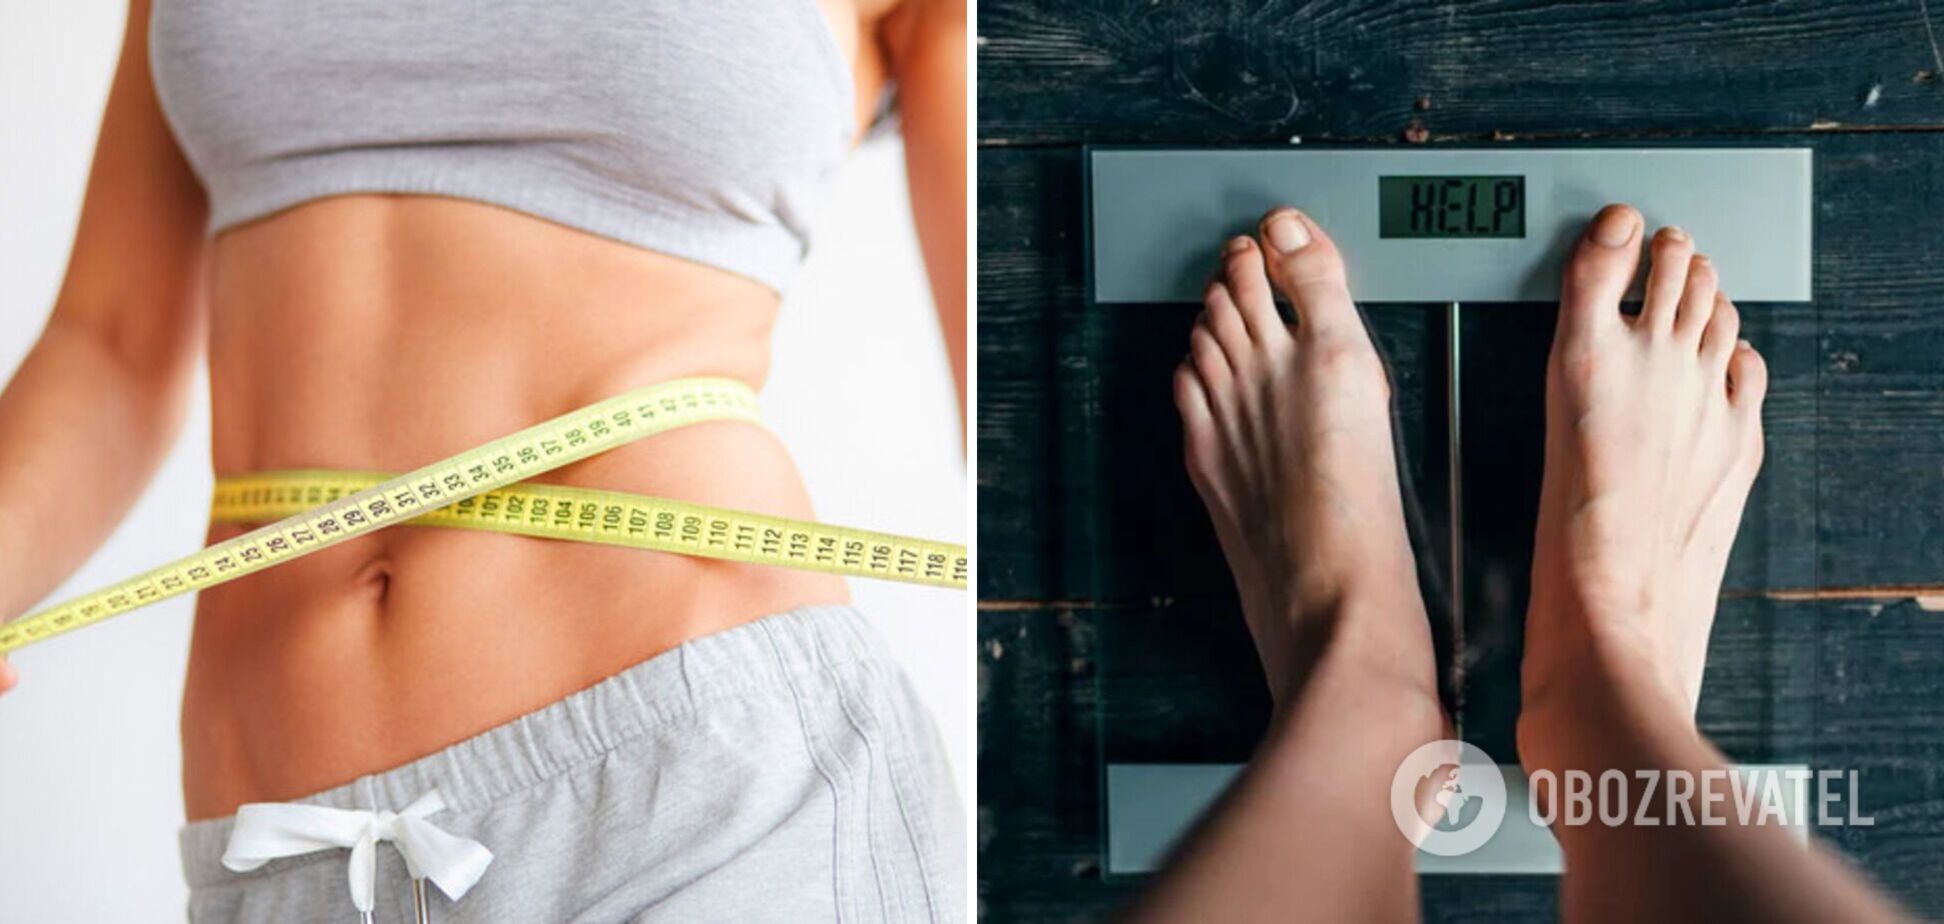 42-летняя женщина сбросила 45 кг без изнурительных диет. Фото удивительного перевоплощения